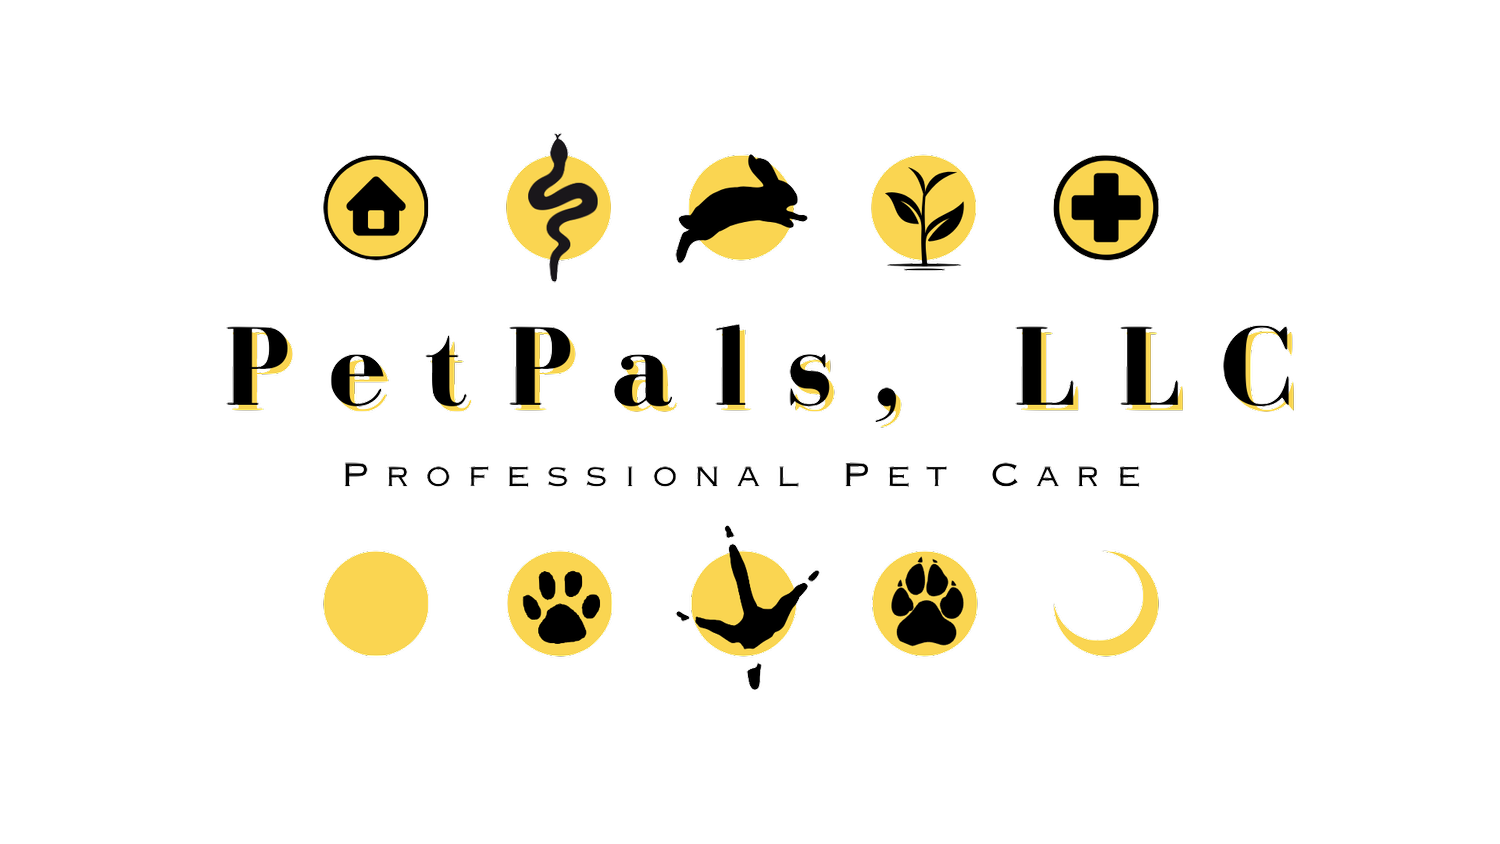 PetPals, LLC - Professional Pet Care